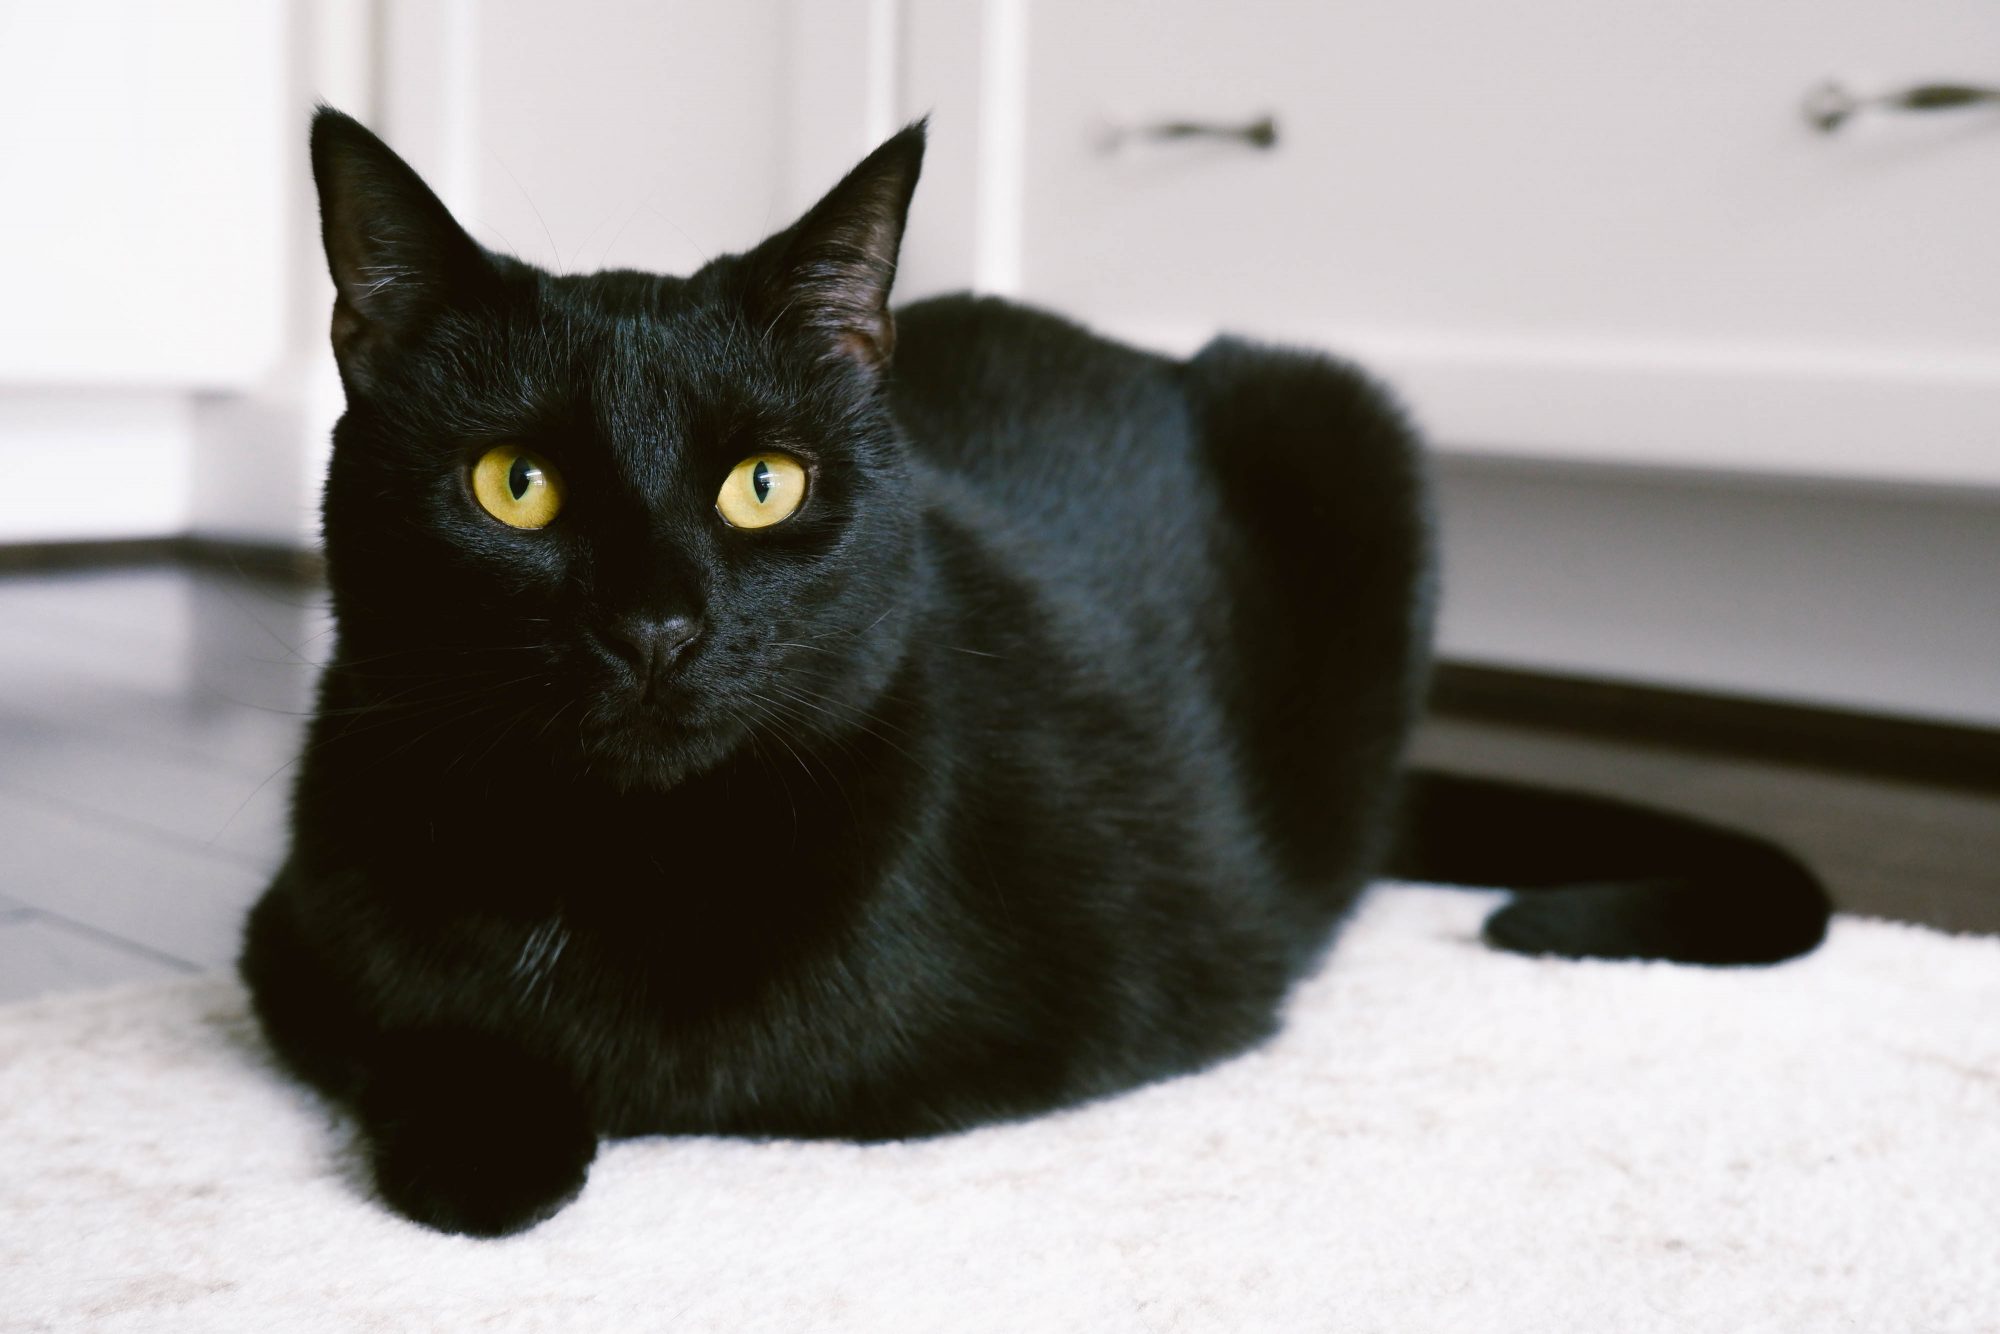 Mèo đen lộng lẫy, đôi mắt sâu thẳm và bóng mềm mại của bộ lông. Hãy xem hình ảnh để đầy thưởng thức vẻ đẹp cổ điển của chúng!